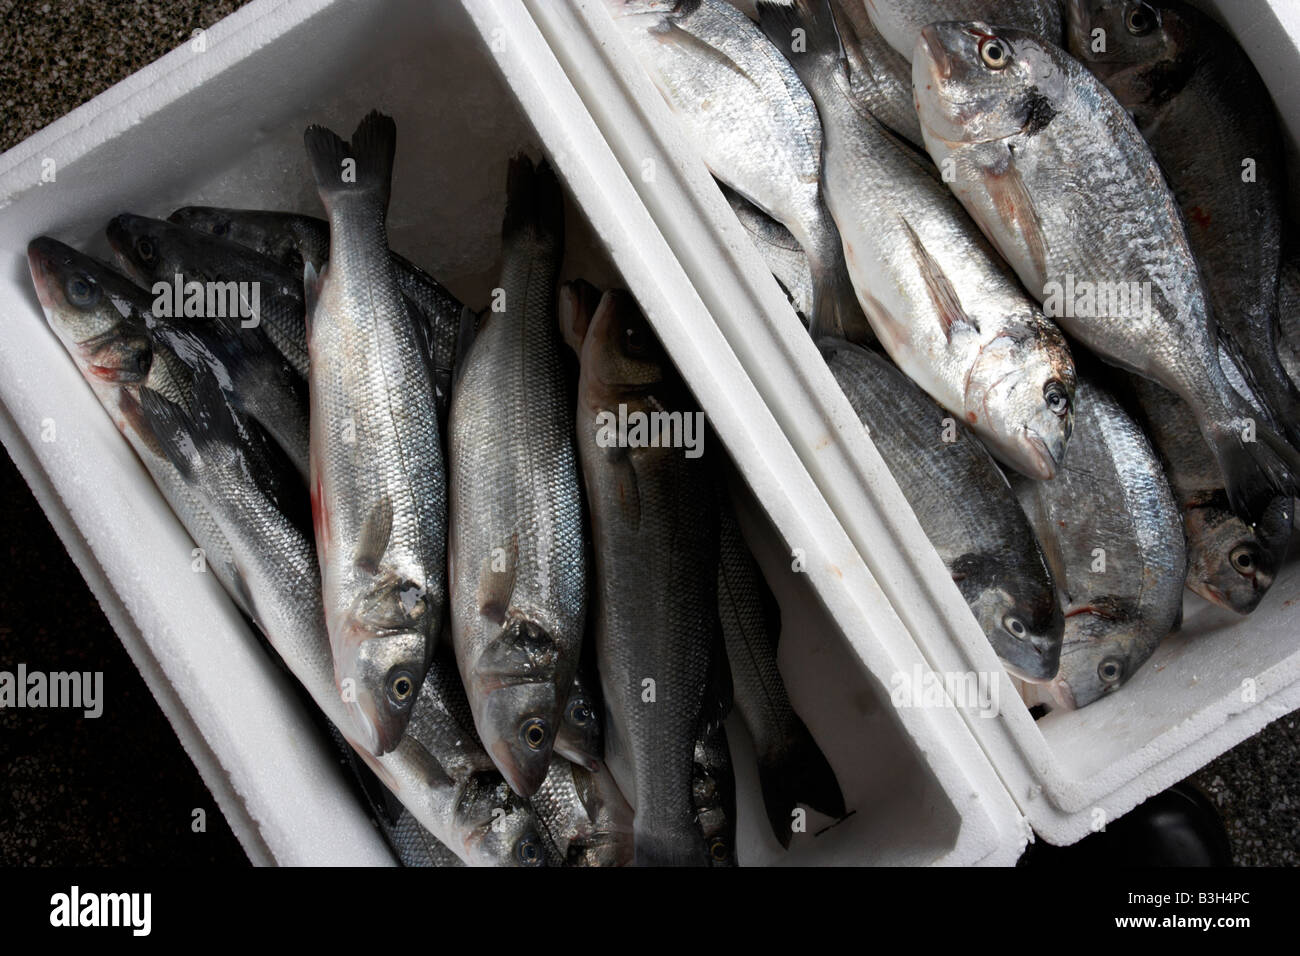 sea bass and sea bream fish in box Stock Photo